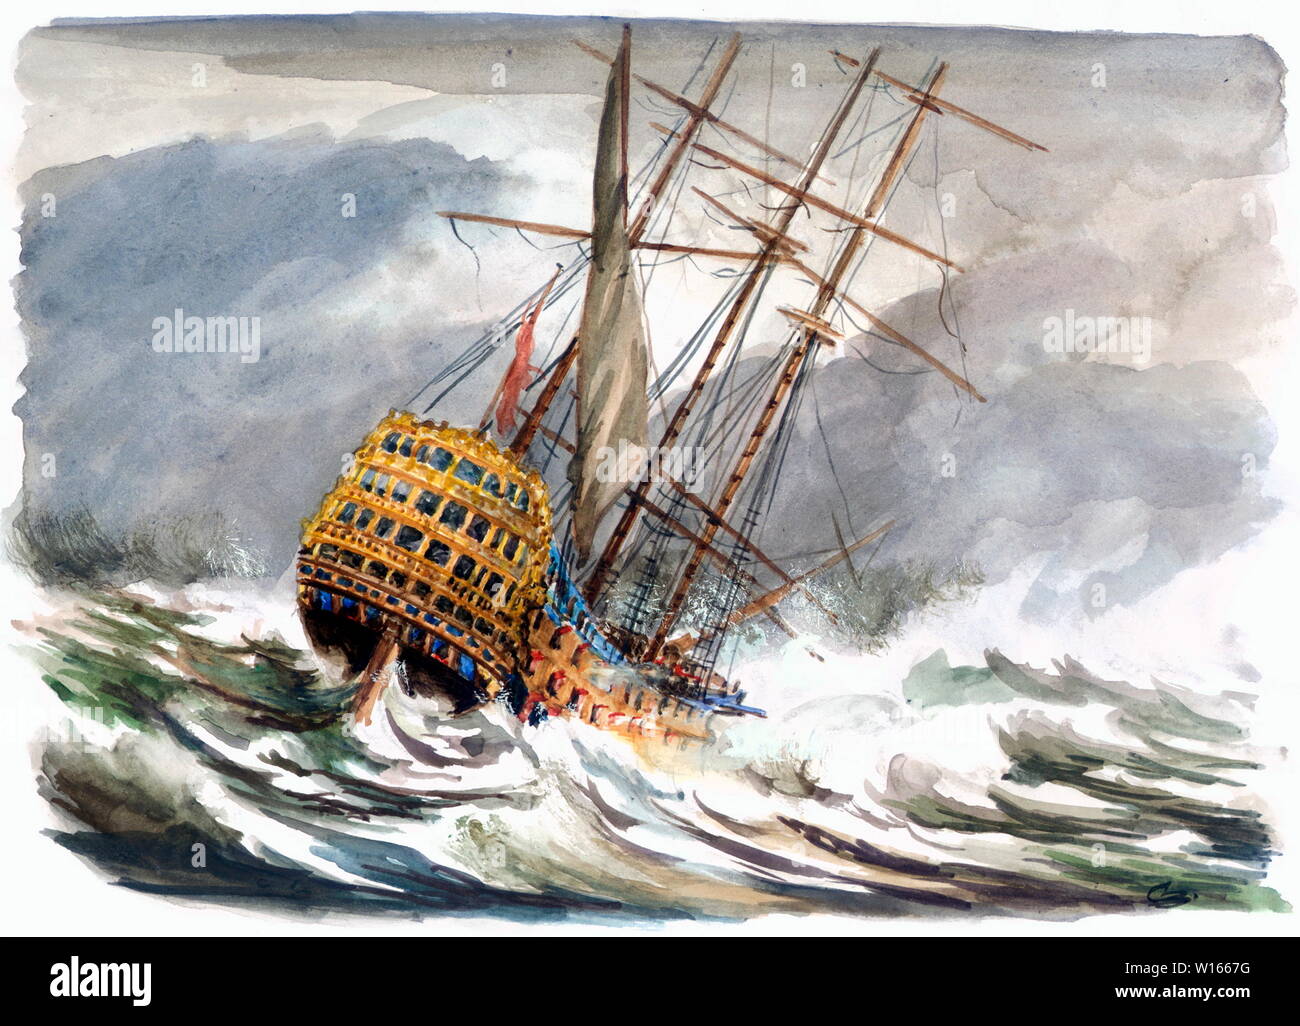 AJAXNTPHOTO. 1744-2008 - fleuron épave découverte - l'AMIRAL SIR JOHN BALCHEN, navire amiral HMS Victory, 6ème DU NOM DE GUERRE, a longtemps cru avoir frappé CASQUETS LES ROCHES, à l'OUEST DE L'Alderney, CHANNEL ISLANDS, AU COURS D'UNE VIOLENTE TEMPÊTE SUR NUIT DU 4ème octobre, 1744. Les AUTRES DÉCOUVERTES PAR L'ENTREPRISE AMÉRICAINE ODYSSSEY MARINE EXPLORATION INC A TROUVÉ L'ÉPAVE RESTE AU SUD DU COMTÉ DE DEVON SALCOMBE PORT EN 2008, près de 60 milles (100 km) DE L'EMPLACEMENT INITIAL AURAIT ÉTÉ LE WRECKSITE. Illustration originale © CAROLINE BEAUMONT. REF:1744 WRECK Banque D'Images